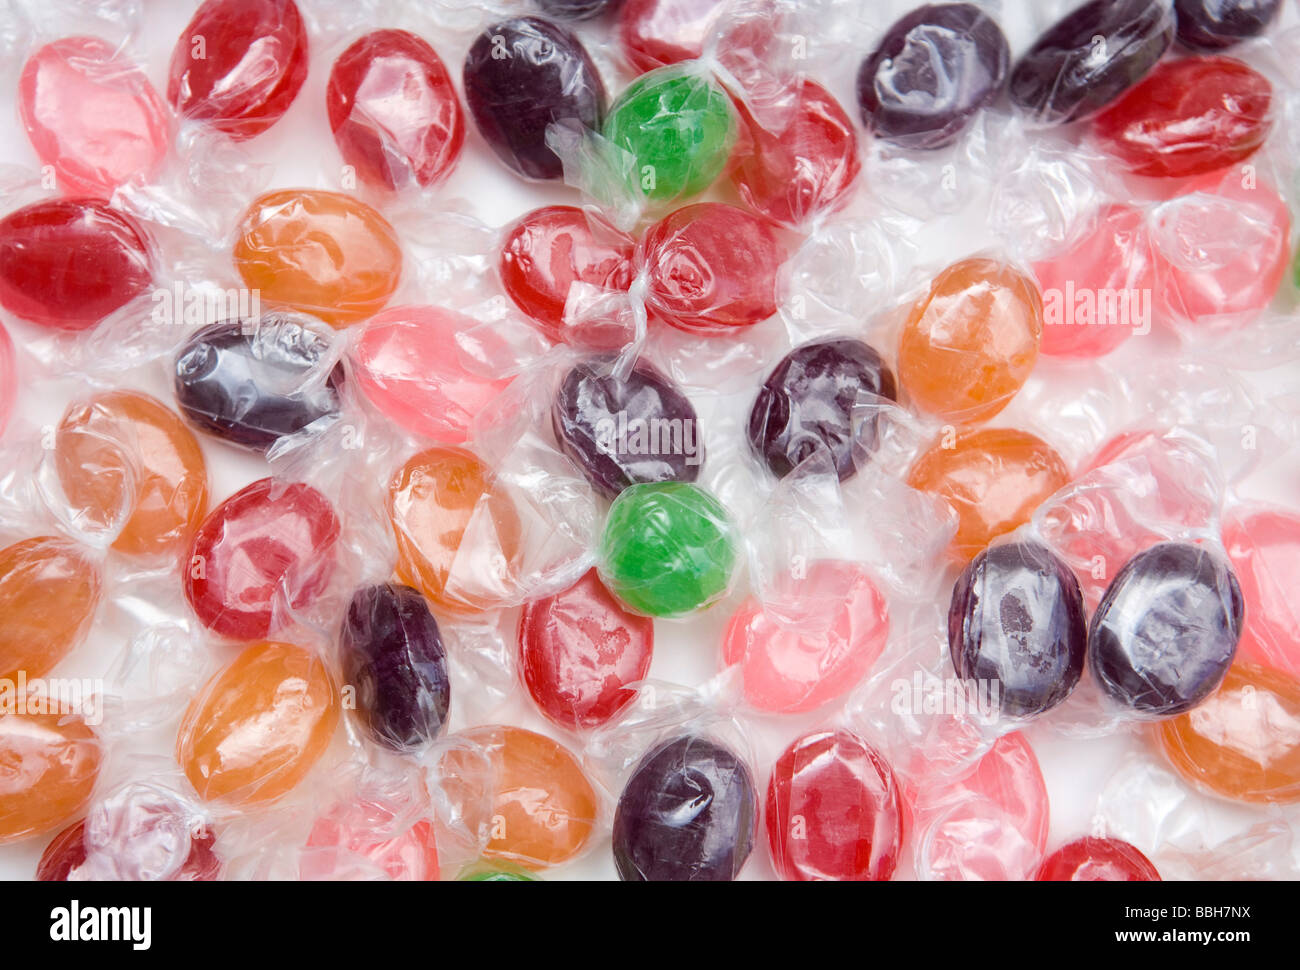 Hard Candy Candy-Verkäufe in den USA blieben trotz stark eine Preiserhöhung auf Süßigkeiten auf der ganzen Linie. Stockfoto